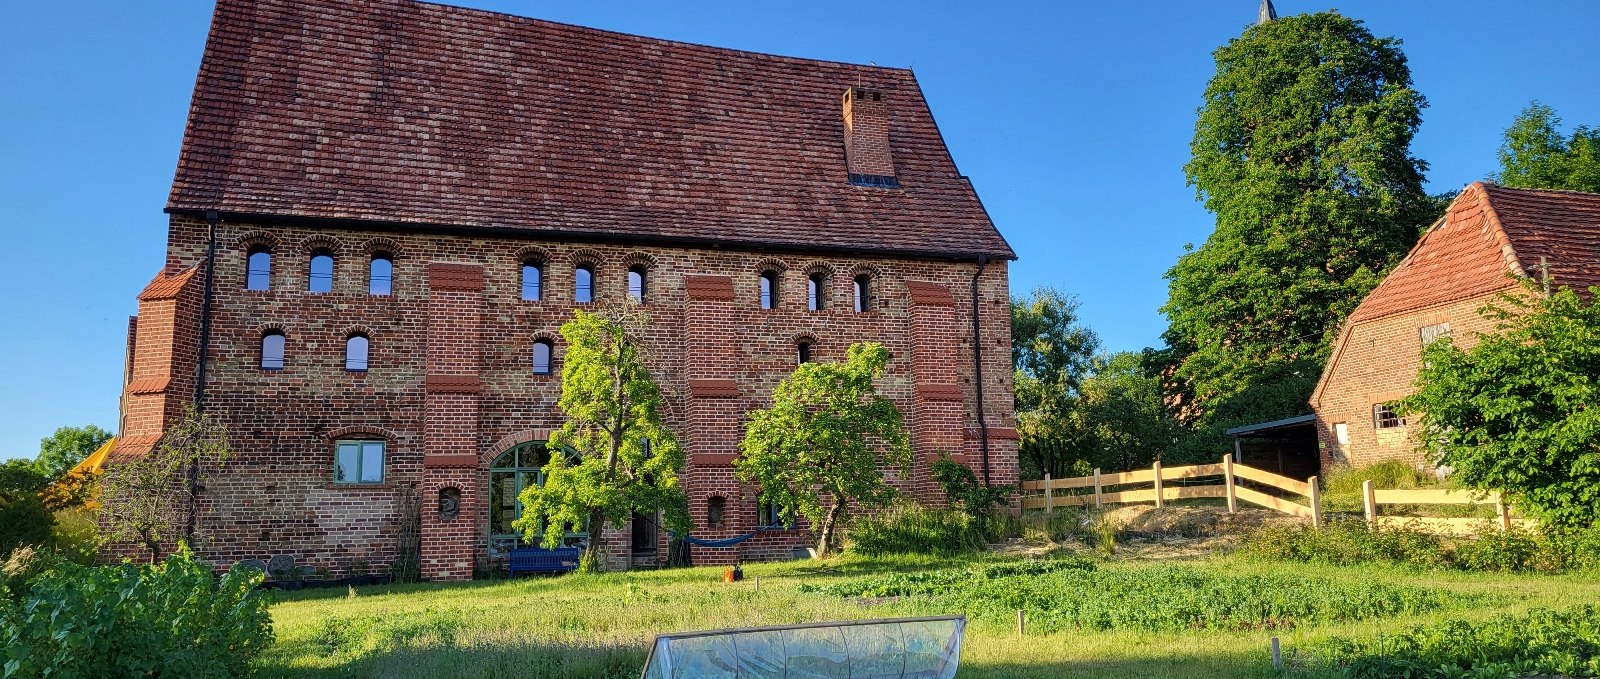 Pilgerkloster Tempzin4, © Tourismusverband Mecklenburg-Schwerin